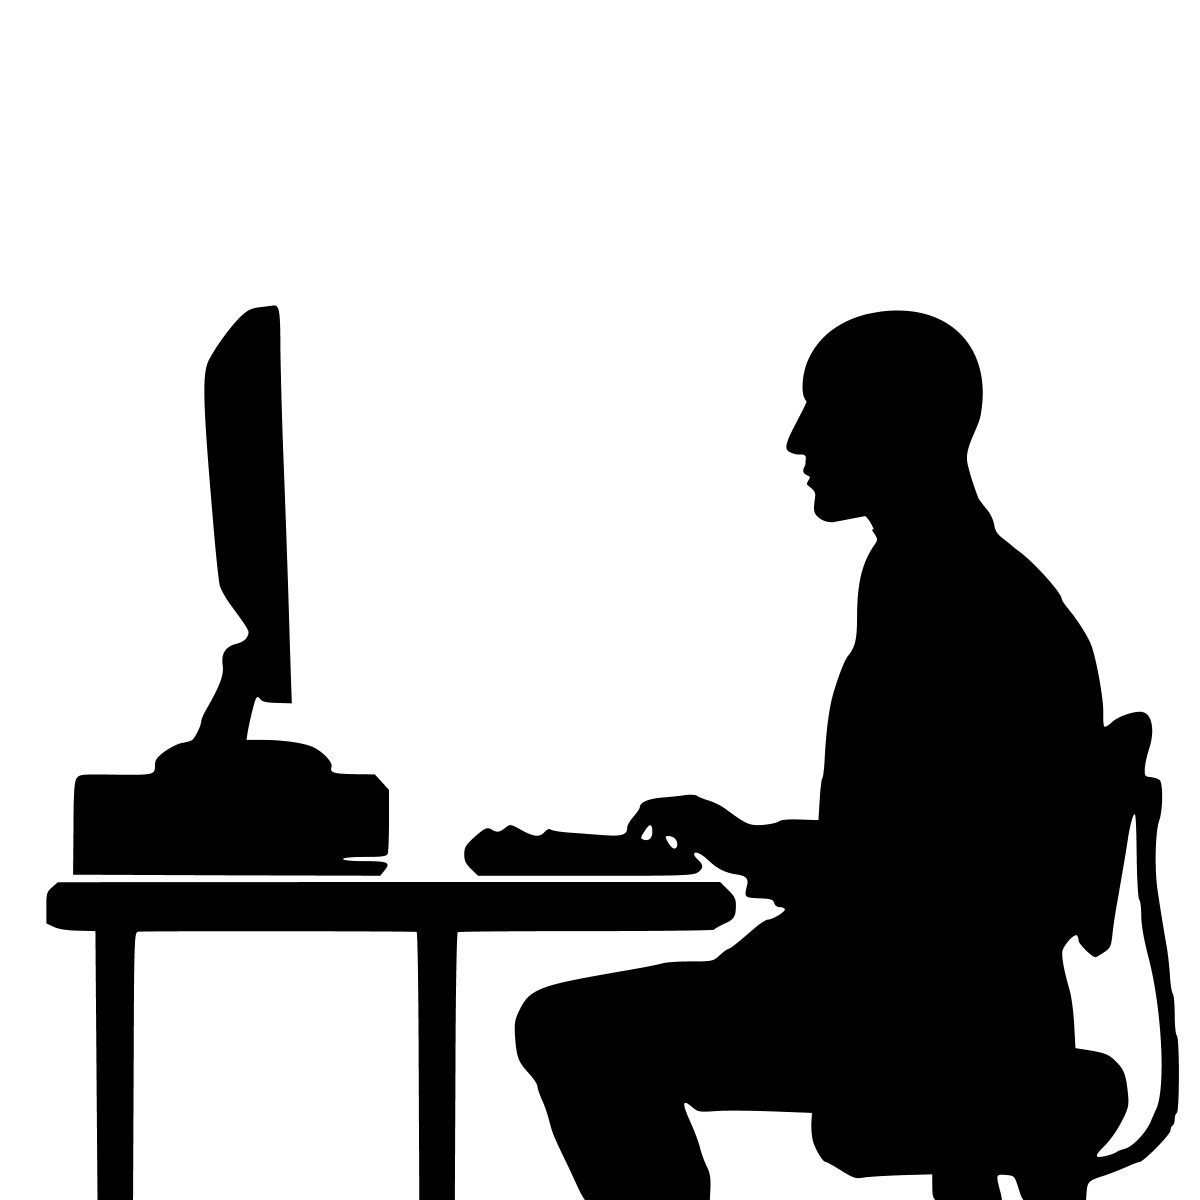 La imagen muestra la silueta de un hombre sentado usando un ordenador.